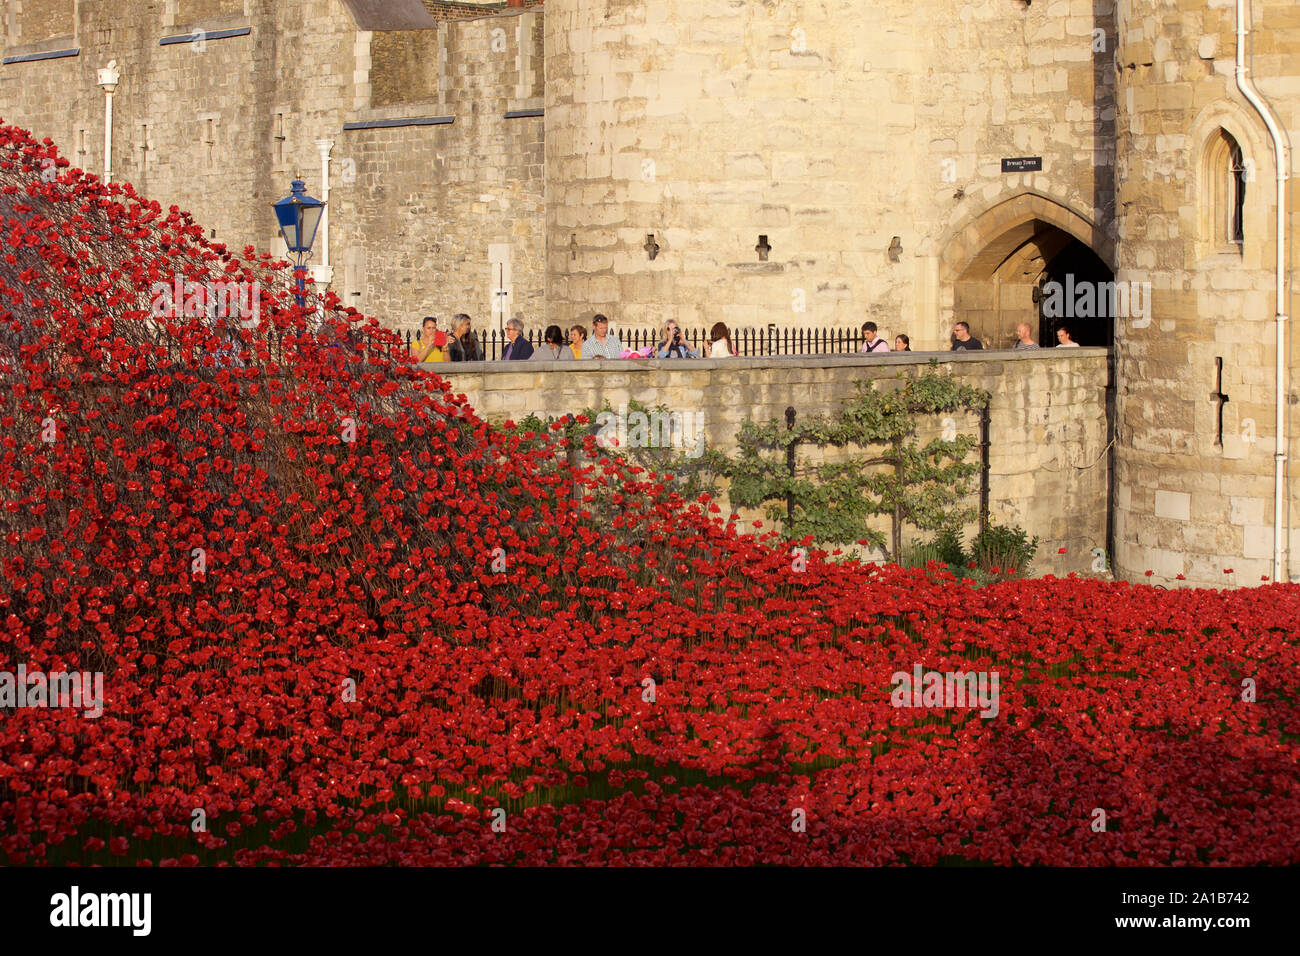 Blut fegte Länder und Meere der Roten Installation am Tower von London Kennzeichnung 100 Jahre seit dem 1. Weltkrieg. Stockfoto